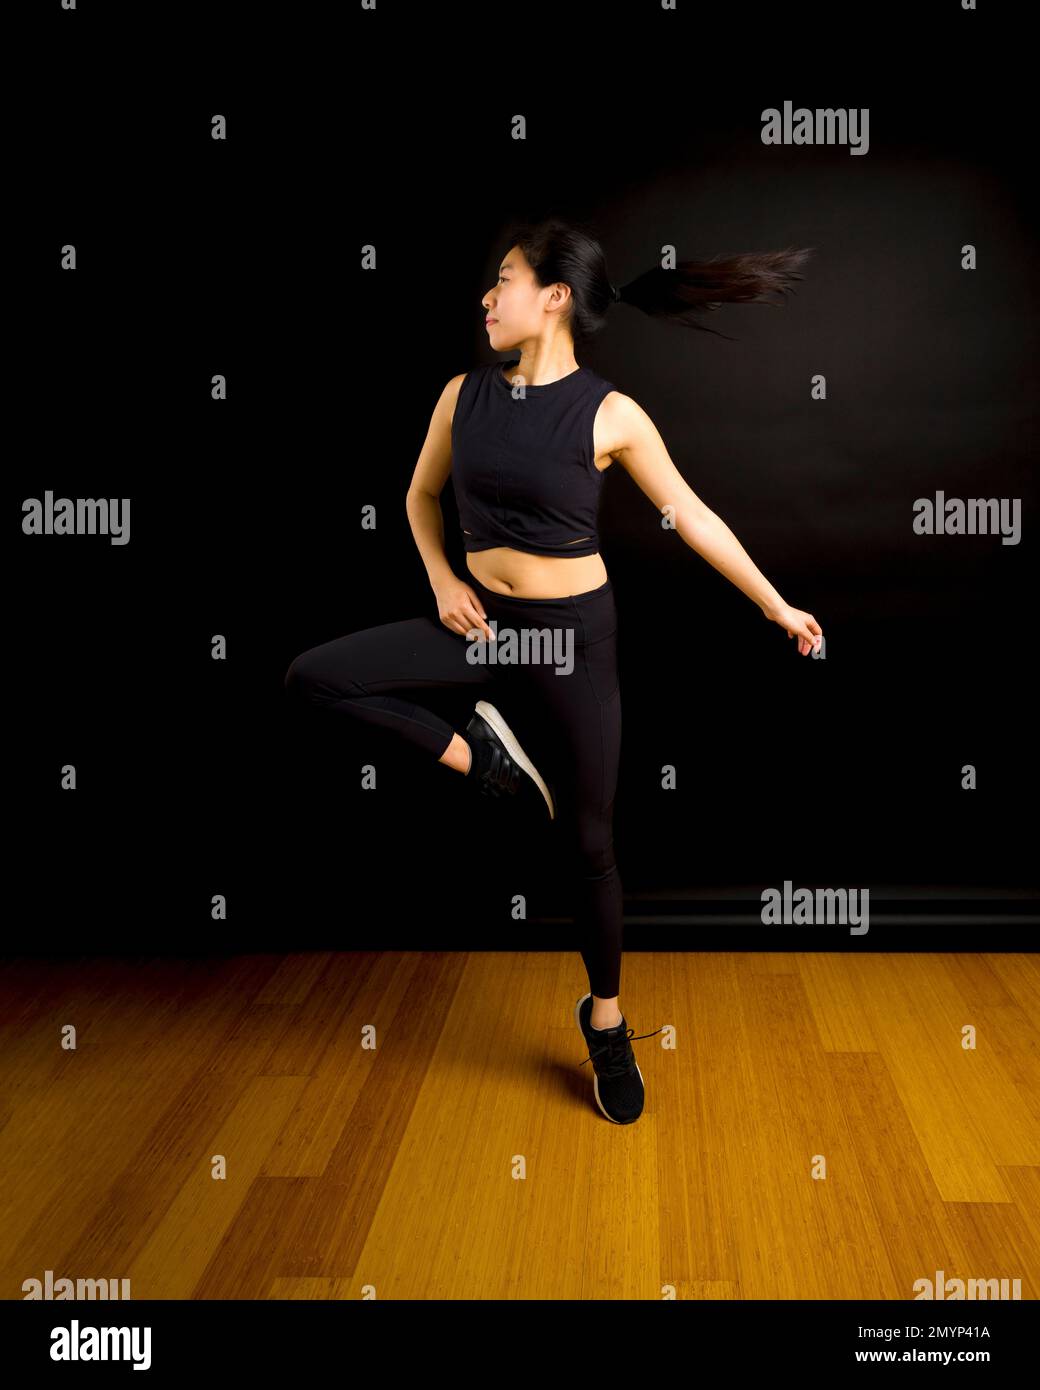 Fit Young Asian Dancer Woman Jumping and Spinning mit Pferdeschwanz im schwarzen Hintergrund Stockfoto